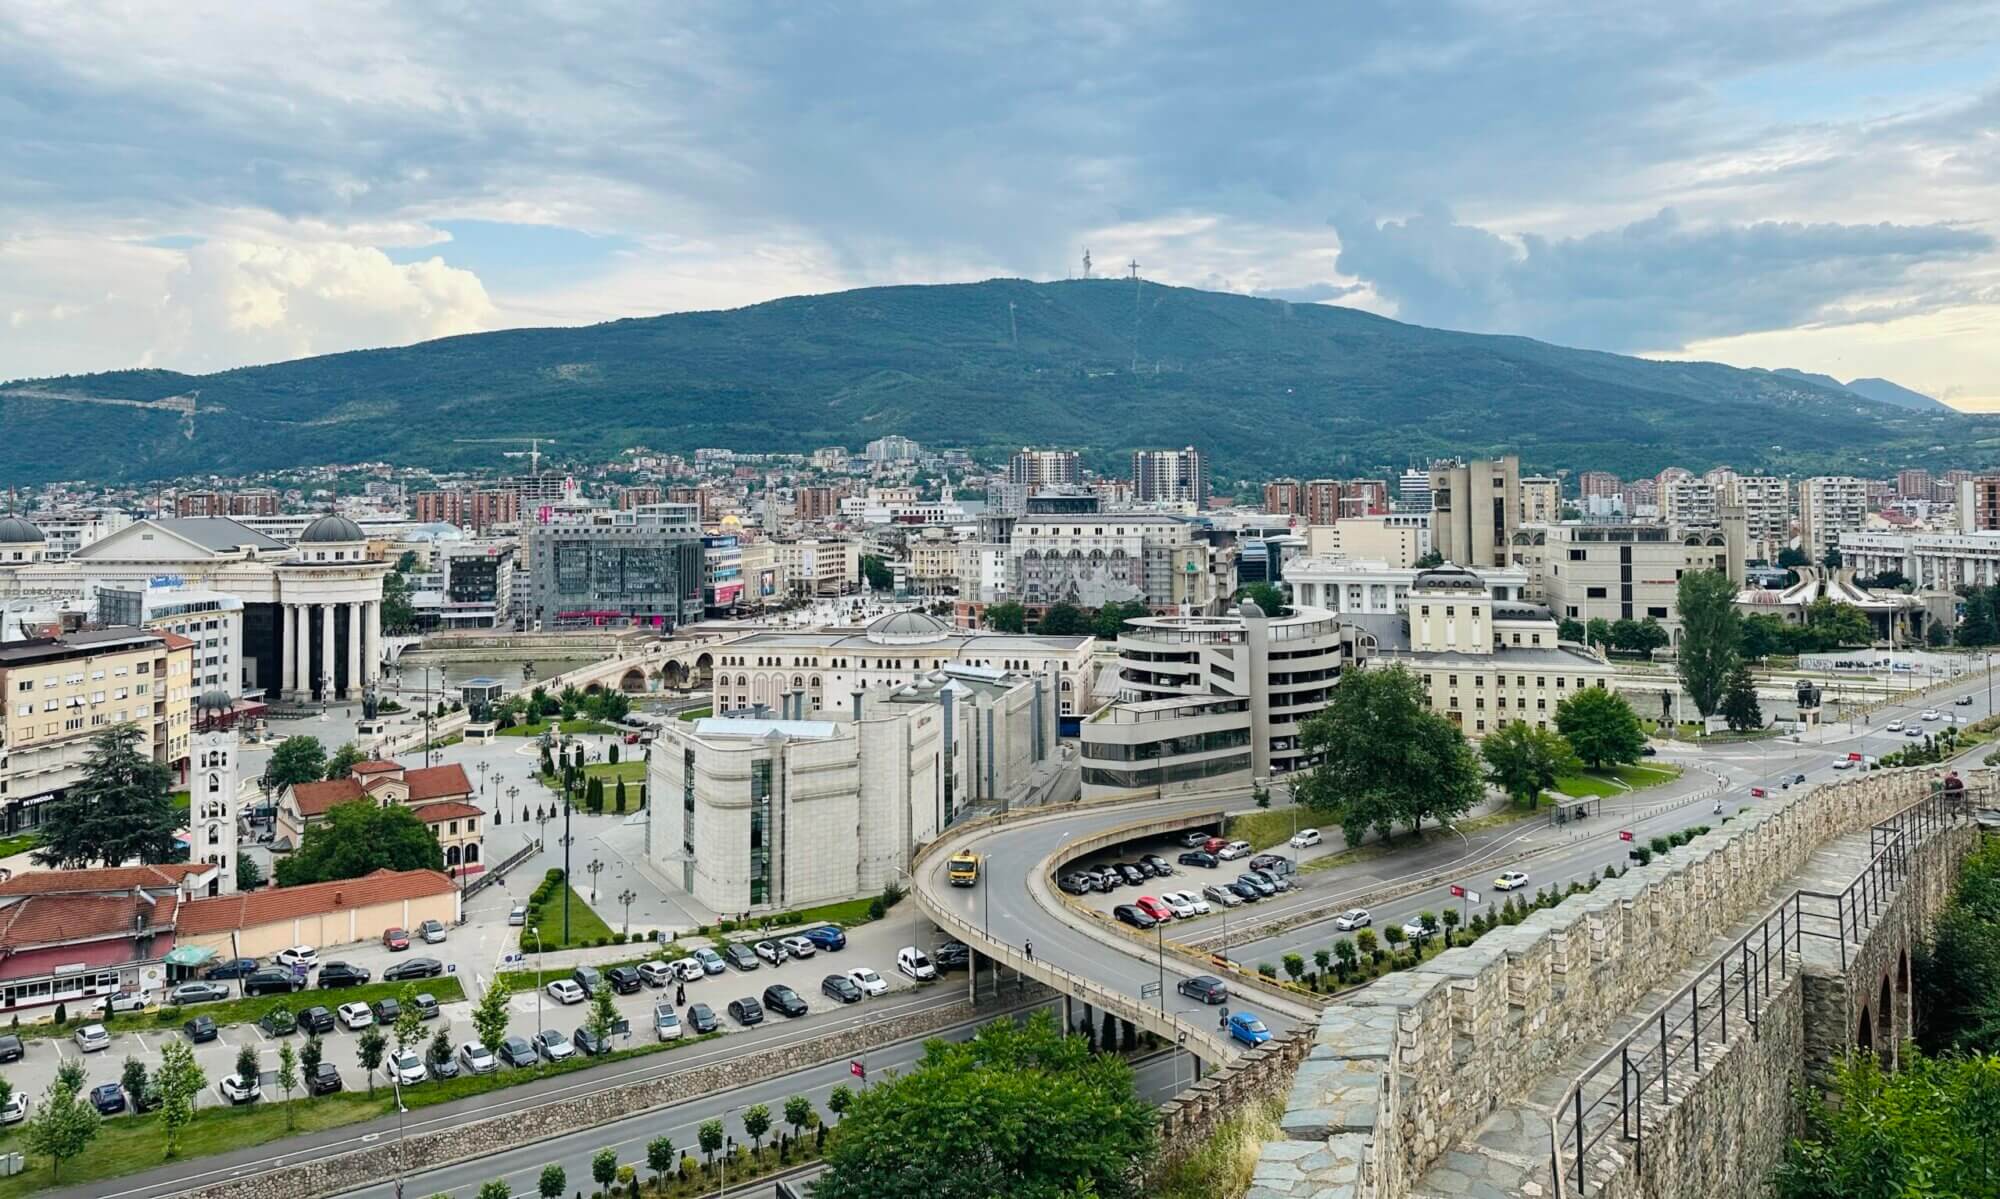 Скопје, North Macedonia